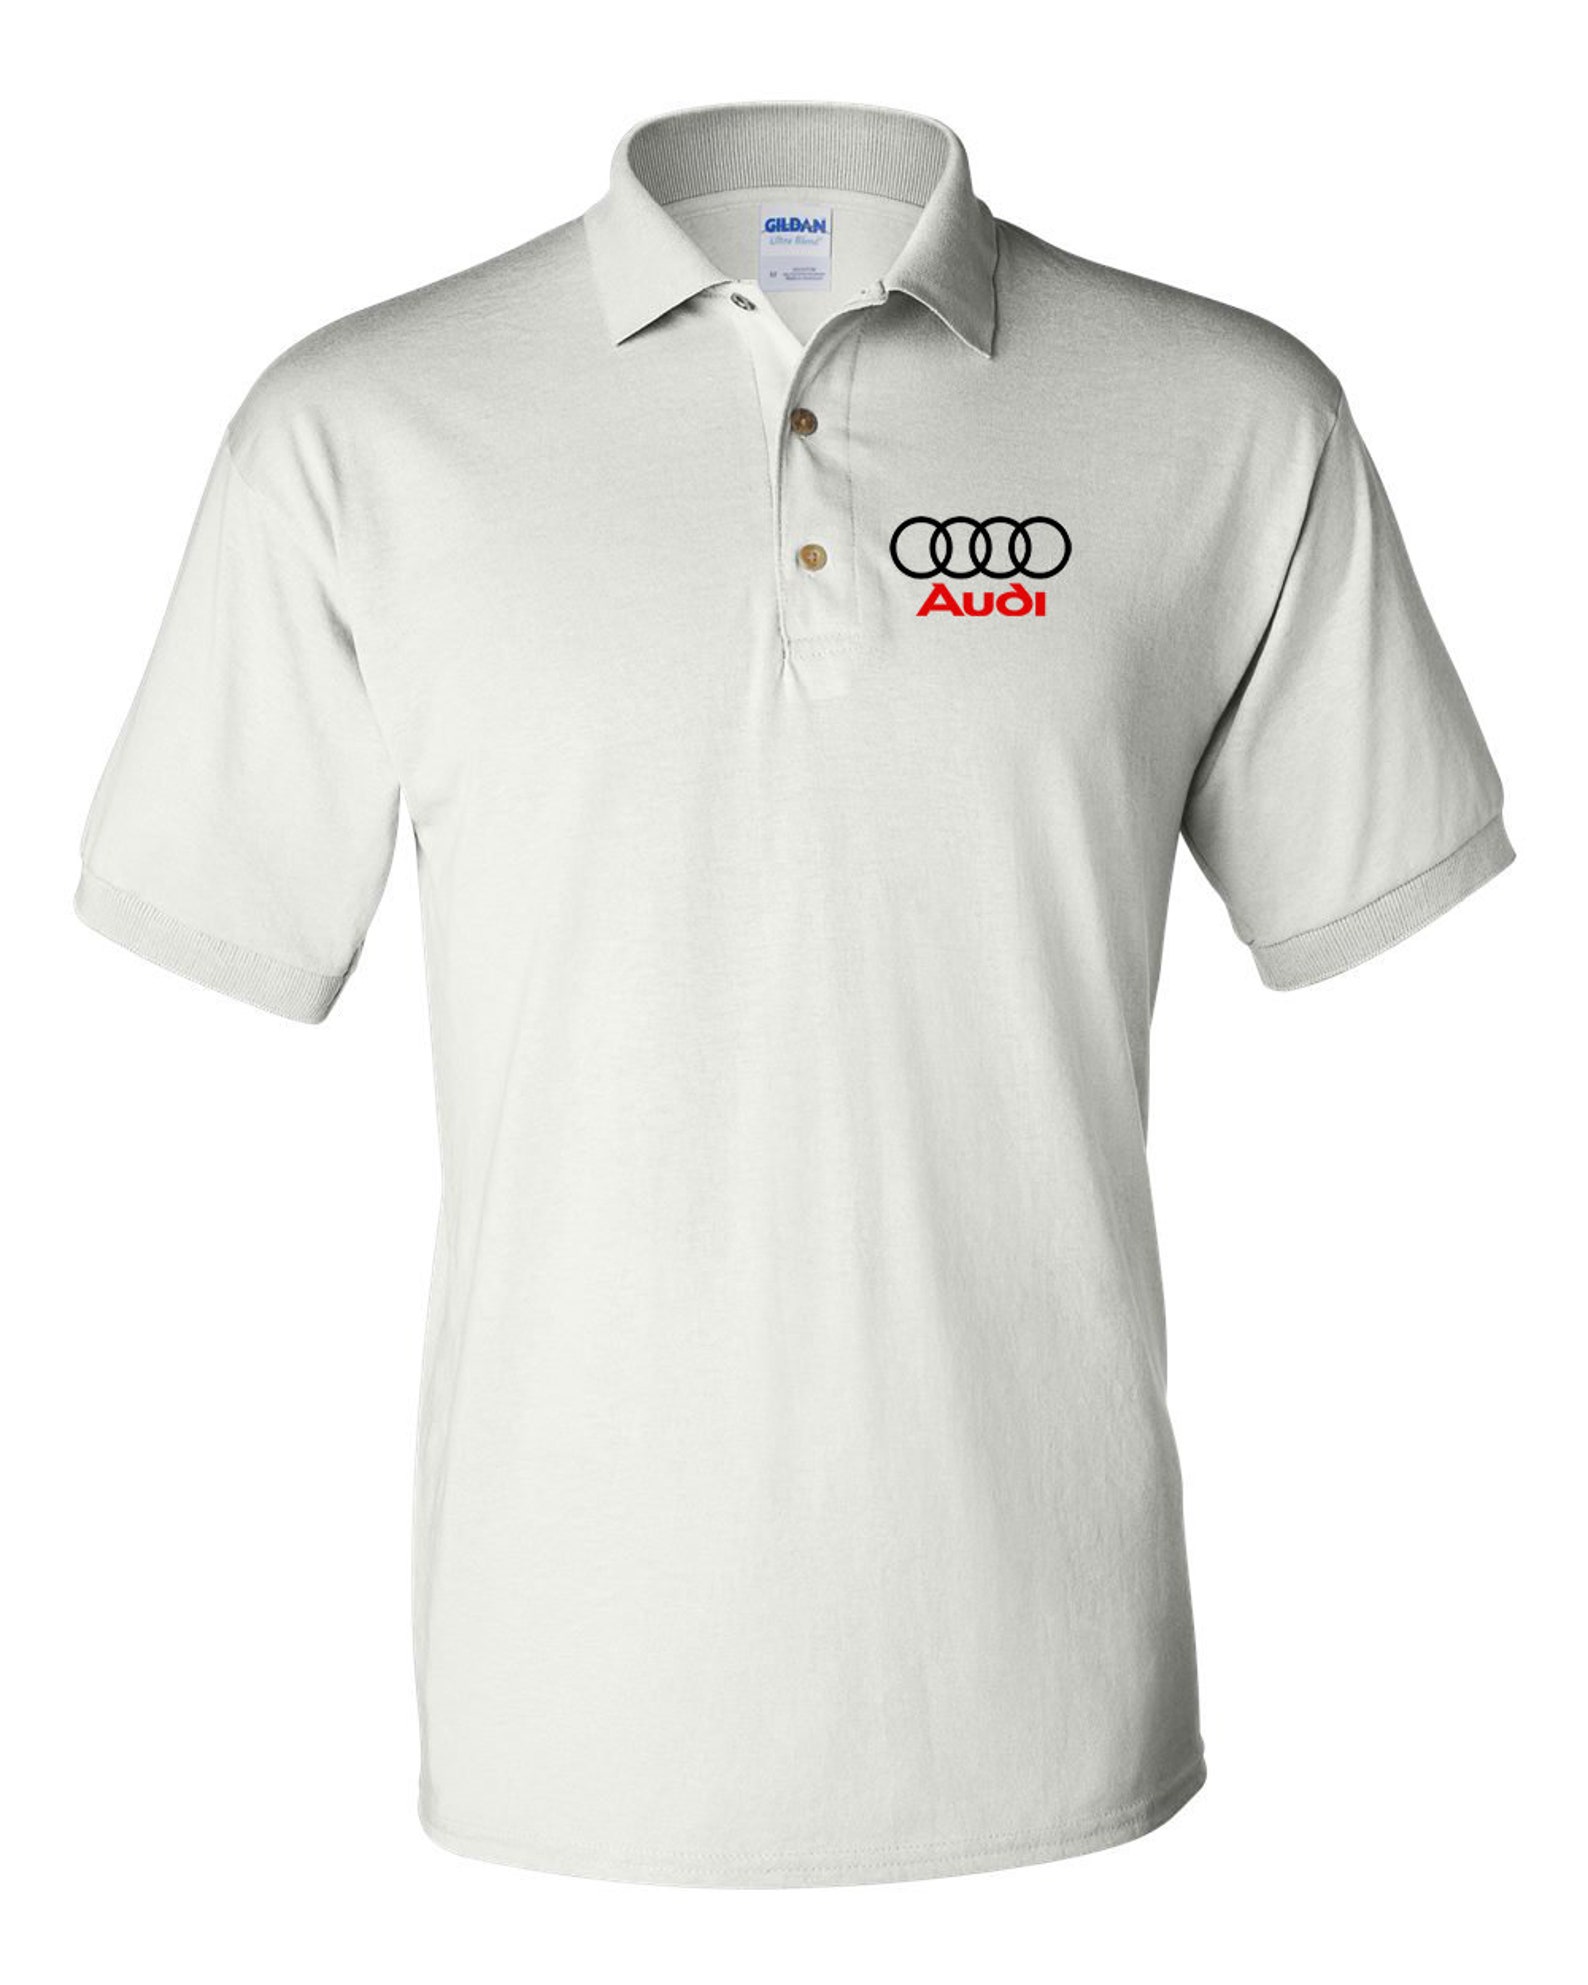 Audi Shirt Audi T-shirt Audi Men's Polo Shirt - Etsy